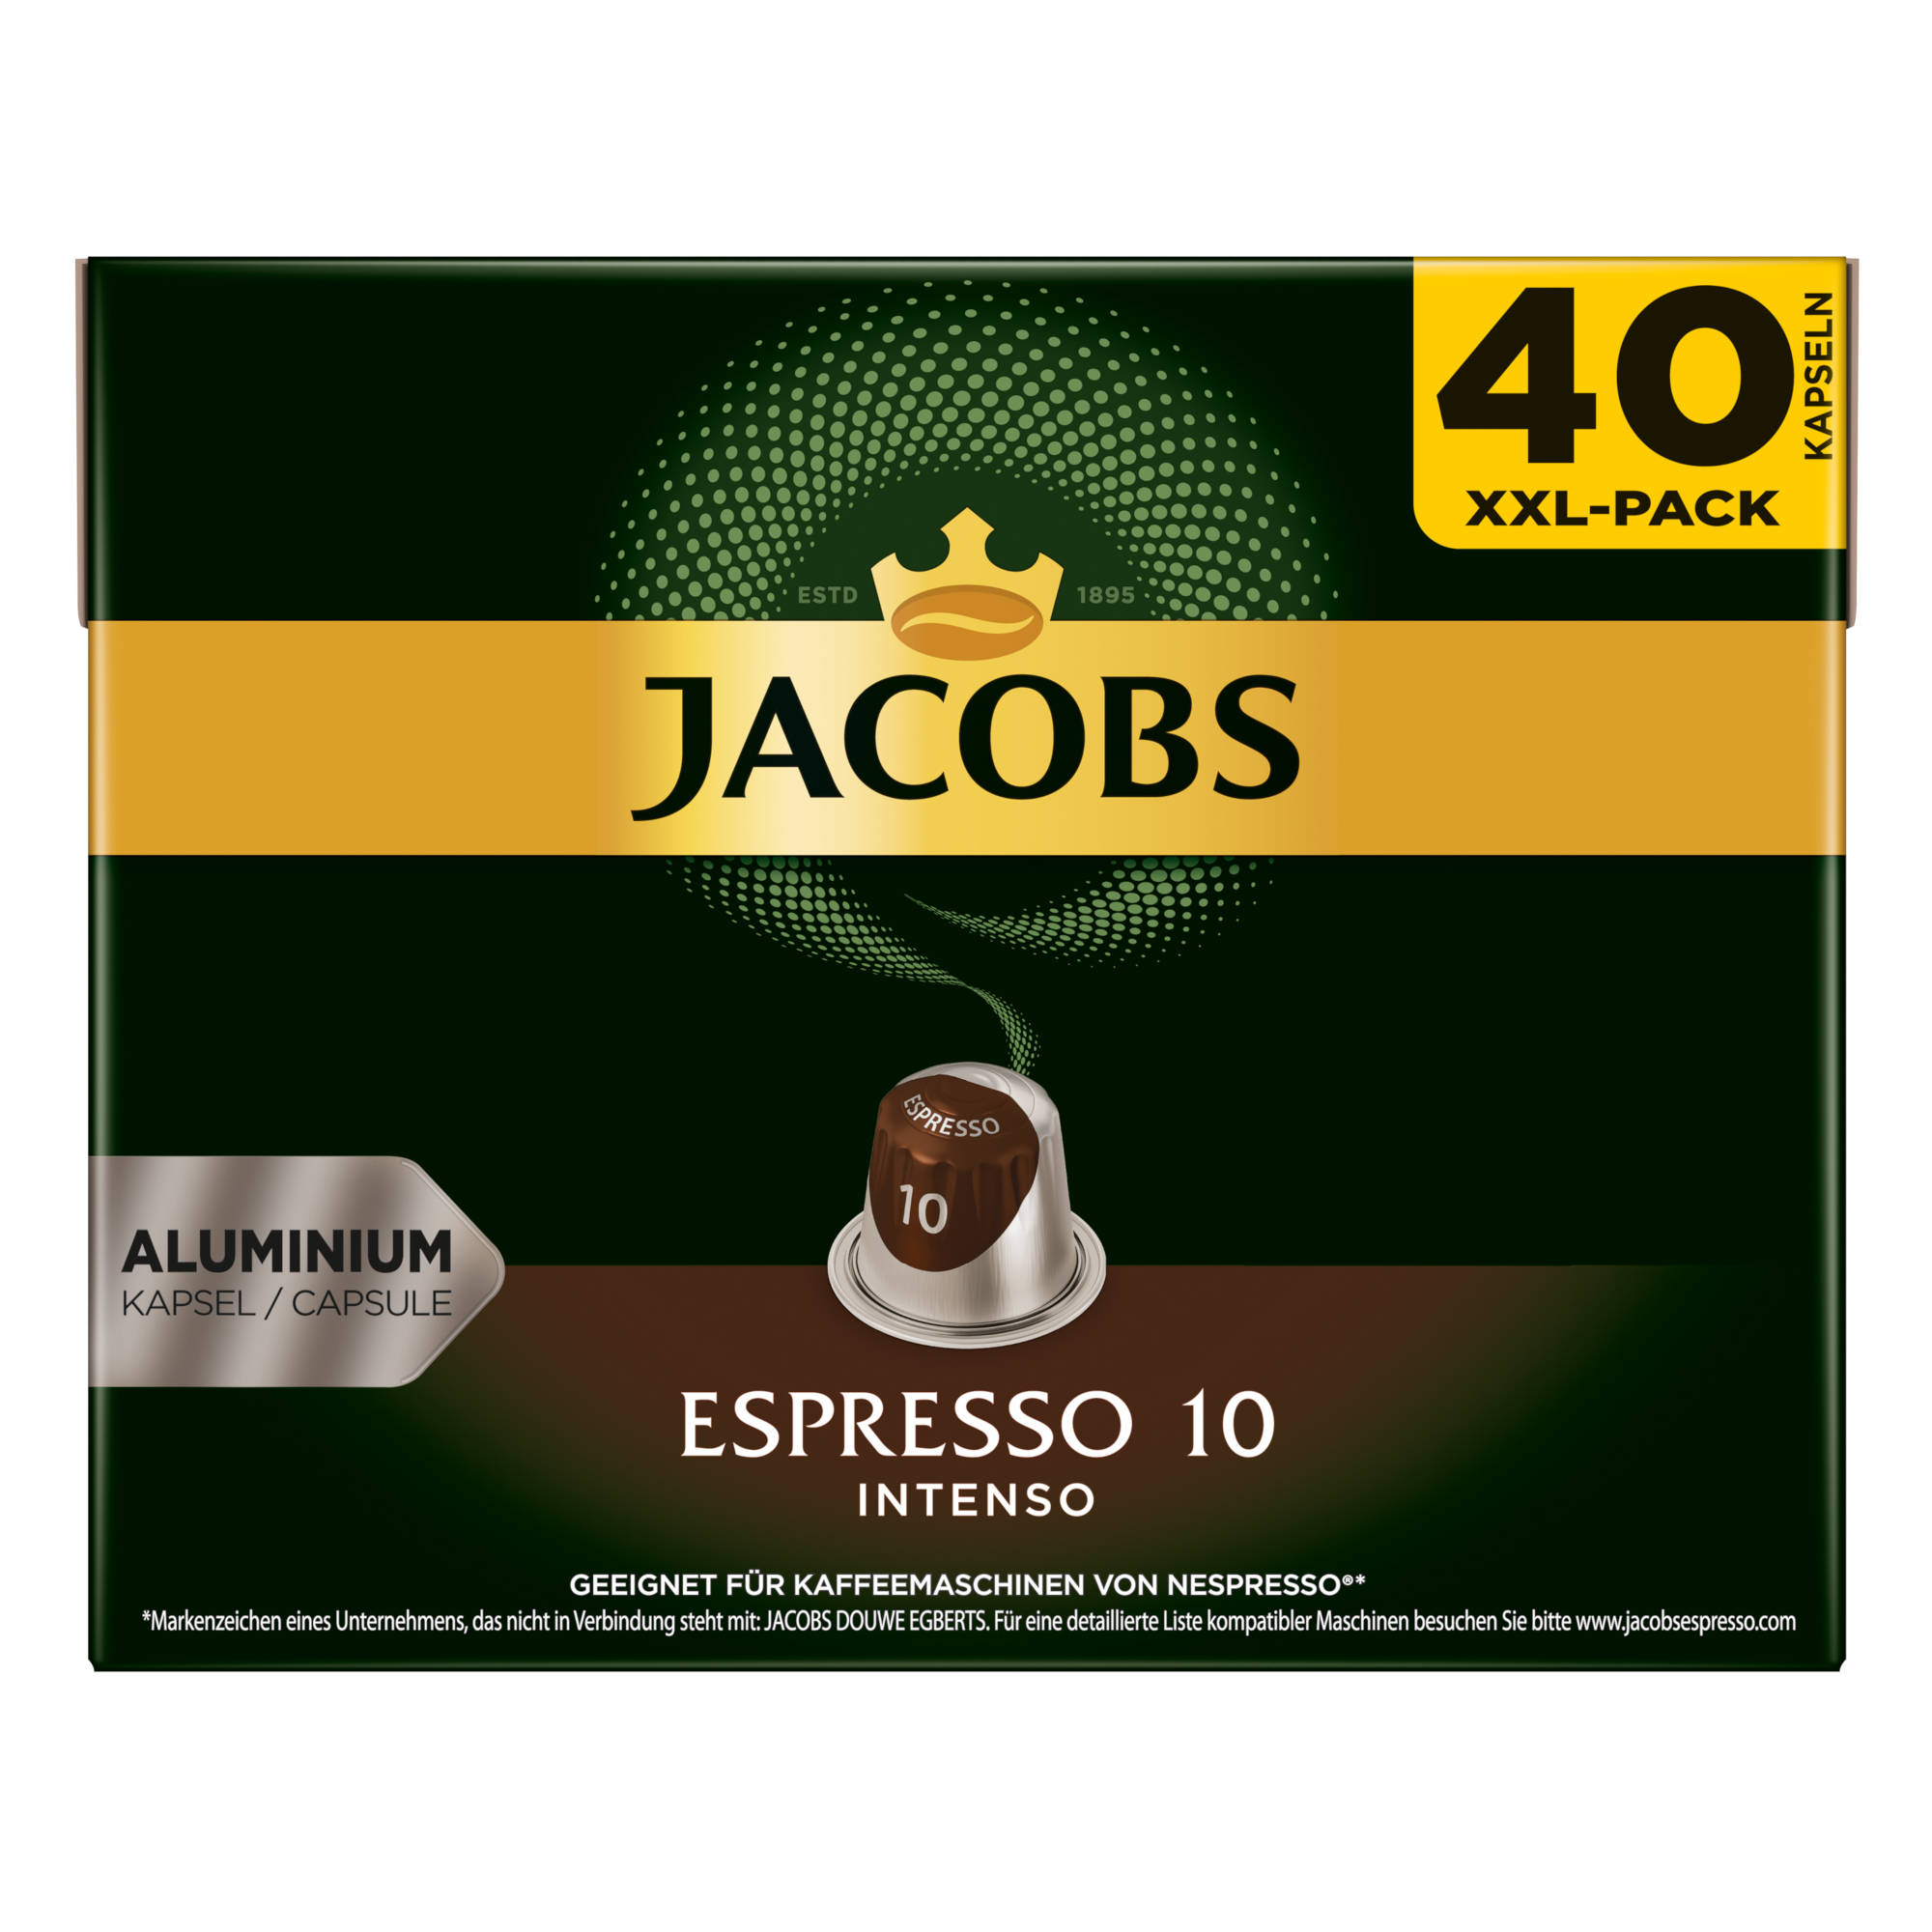 JACOBS Lungo 6 Classico + Intenso 160 (Nespresso System) - 10 Kaffeekapseln kompatible XXL-Packs Espresso Nespresso®